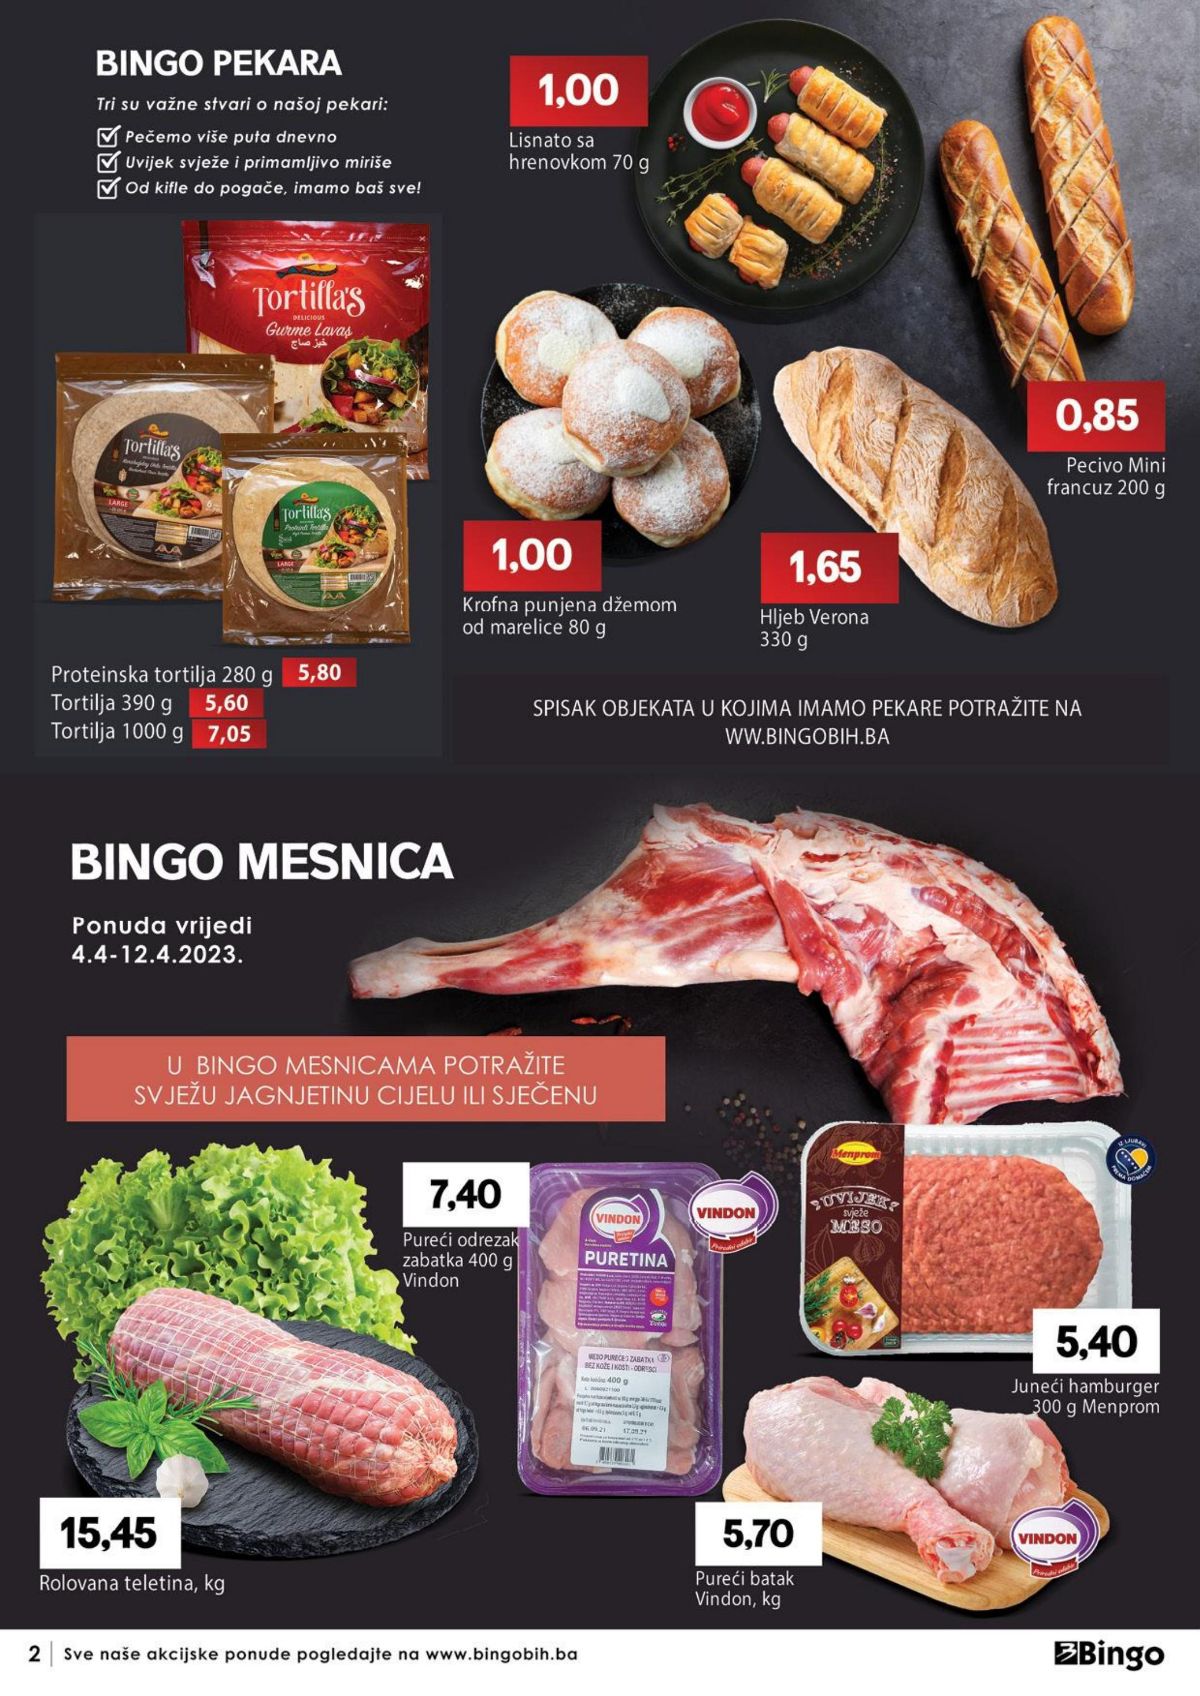 Novi Bingo katalog - Kataloška akcija od 04.04. do 16.04.2023. - stranica 2 - juneći hamburgeri Menprom